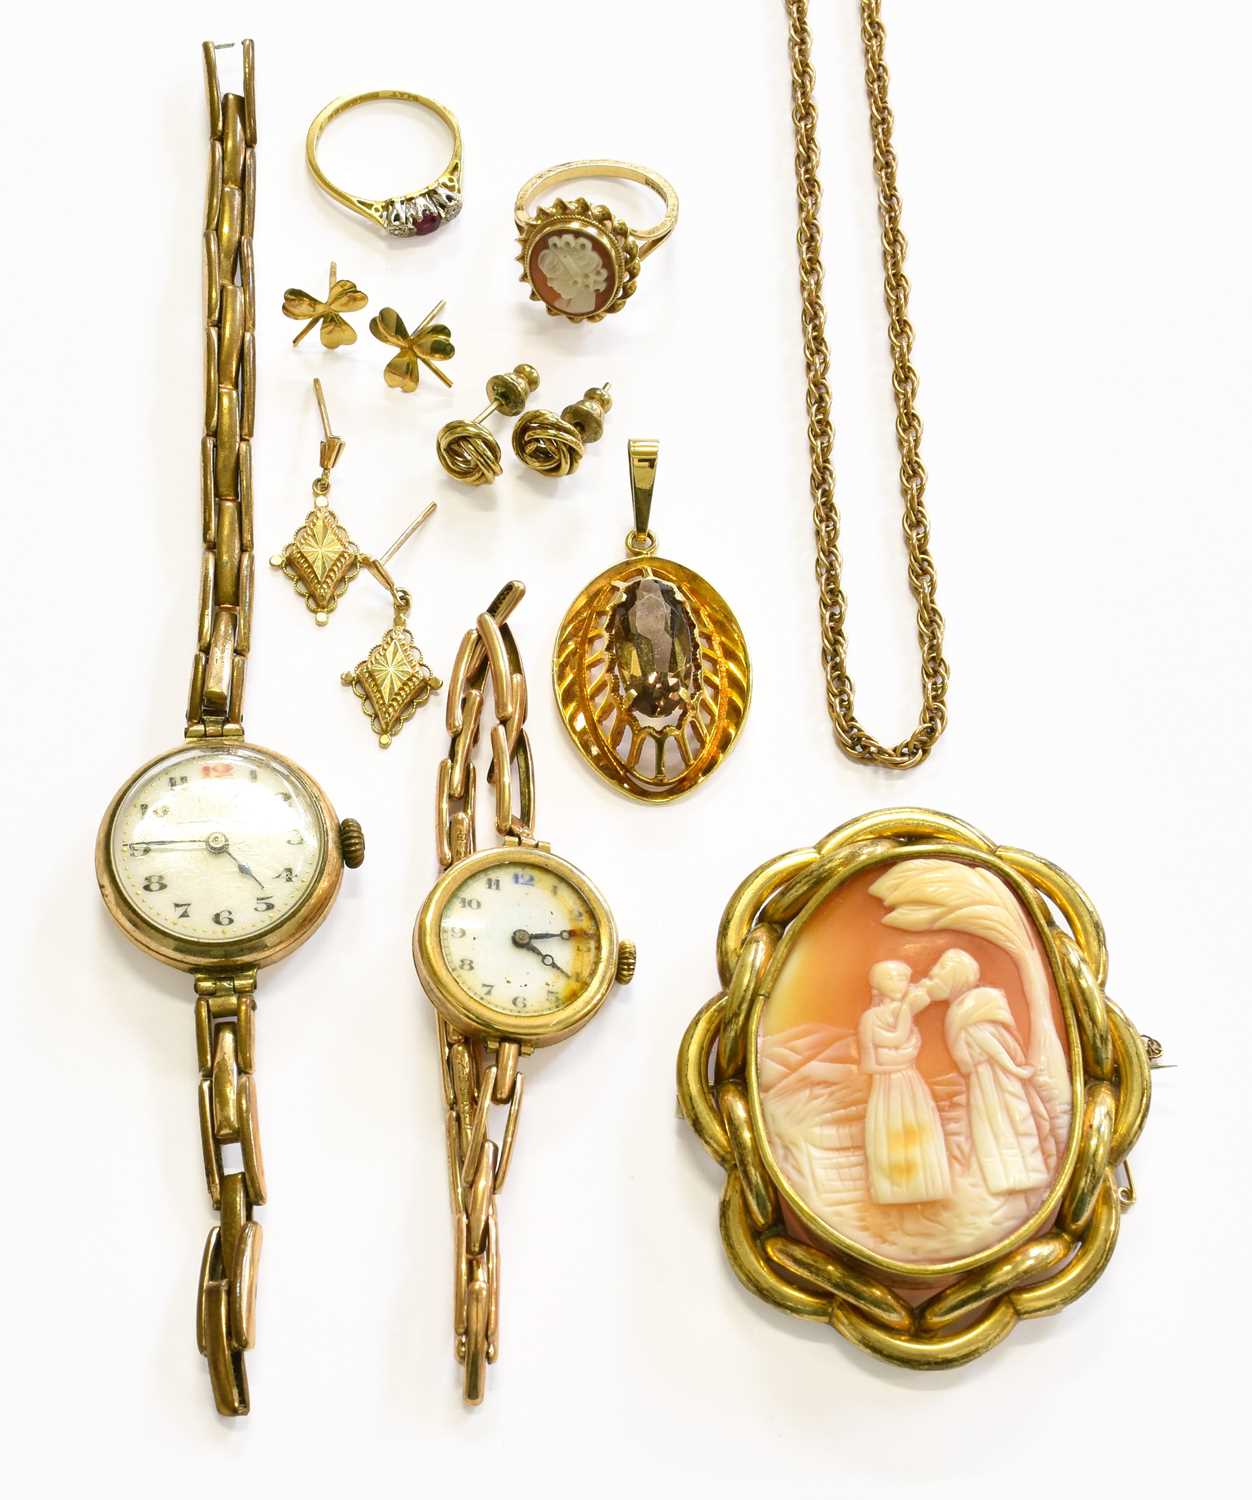 A Small Quantity of Jewellery, including a 9 carat gold smoky quartz pendant, length 4.4cm; a 9